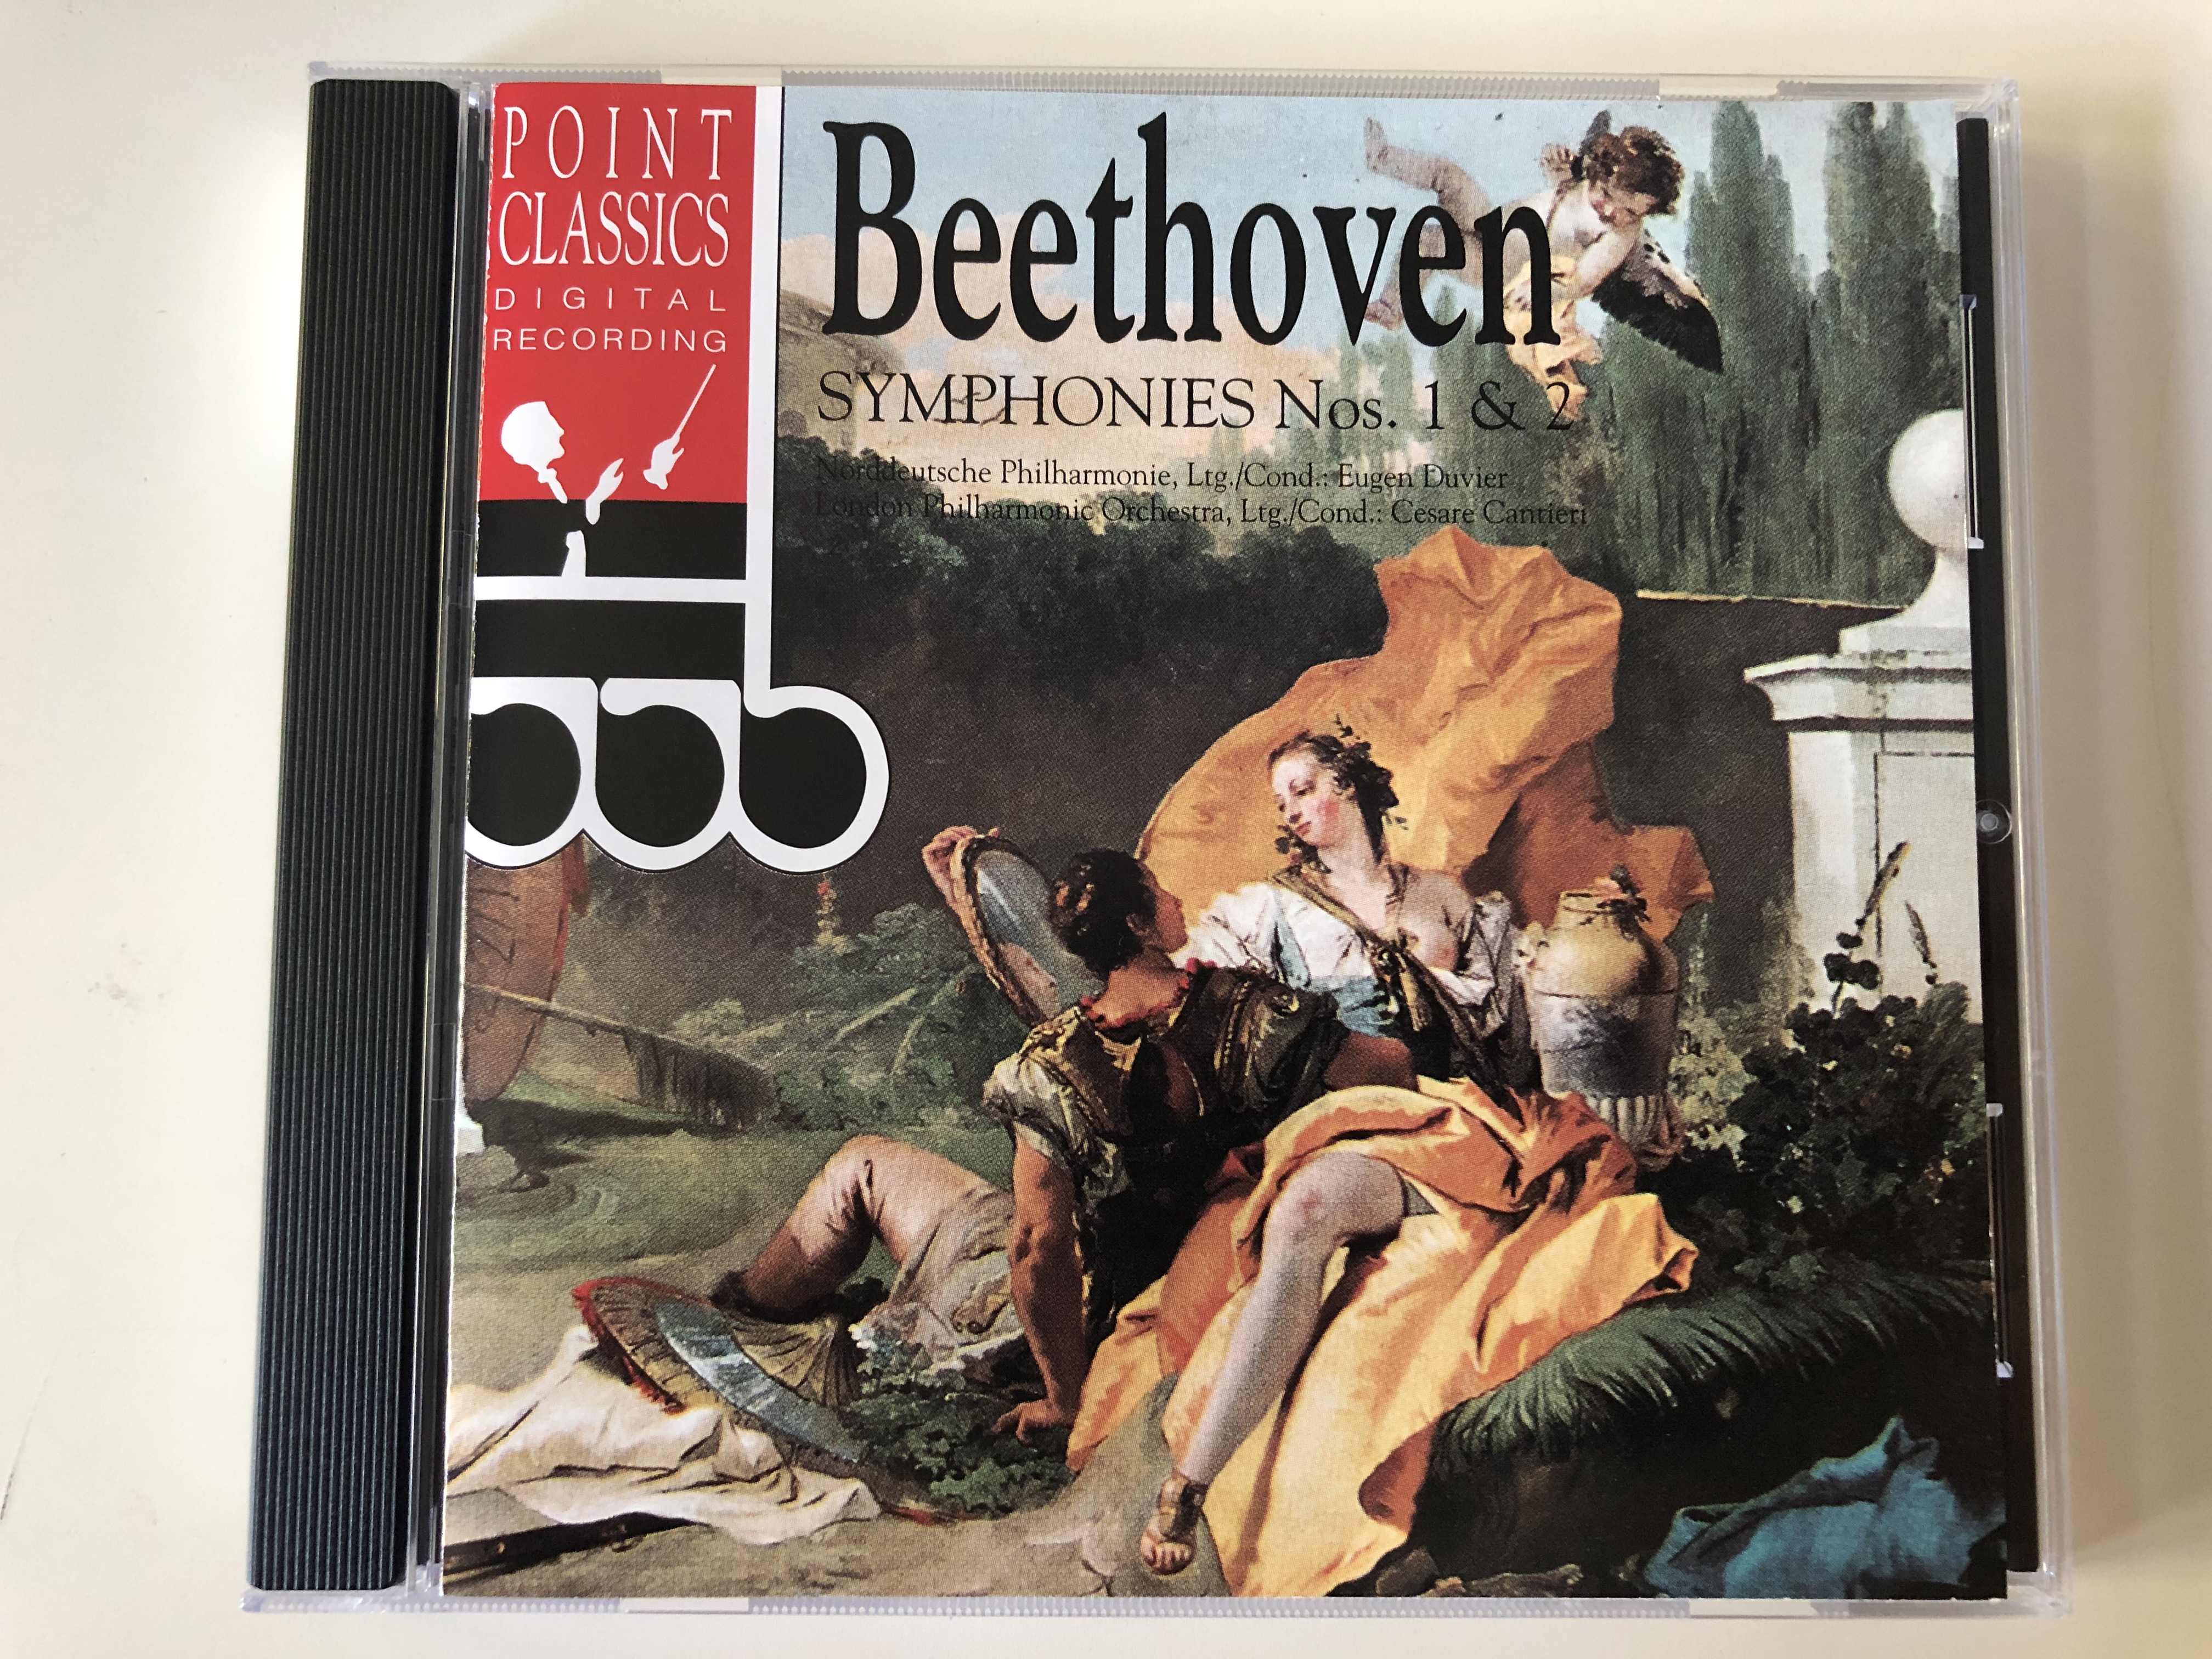 beethoven-symphonies-nos.-1-2-norddeutsche-philharmonie-ltg.-cond.-eugen-duvier-london-philharmonic-orchestra-ltg.-cond.-cesare-cantieri-point-classics-audio-cd-1994-2670112-1-.jpg